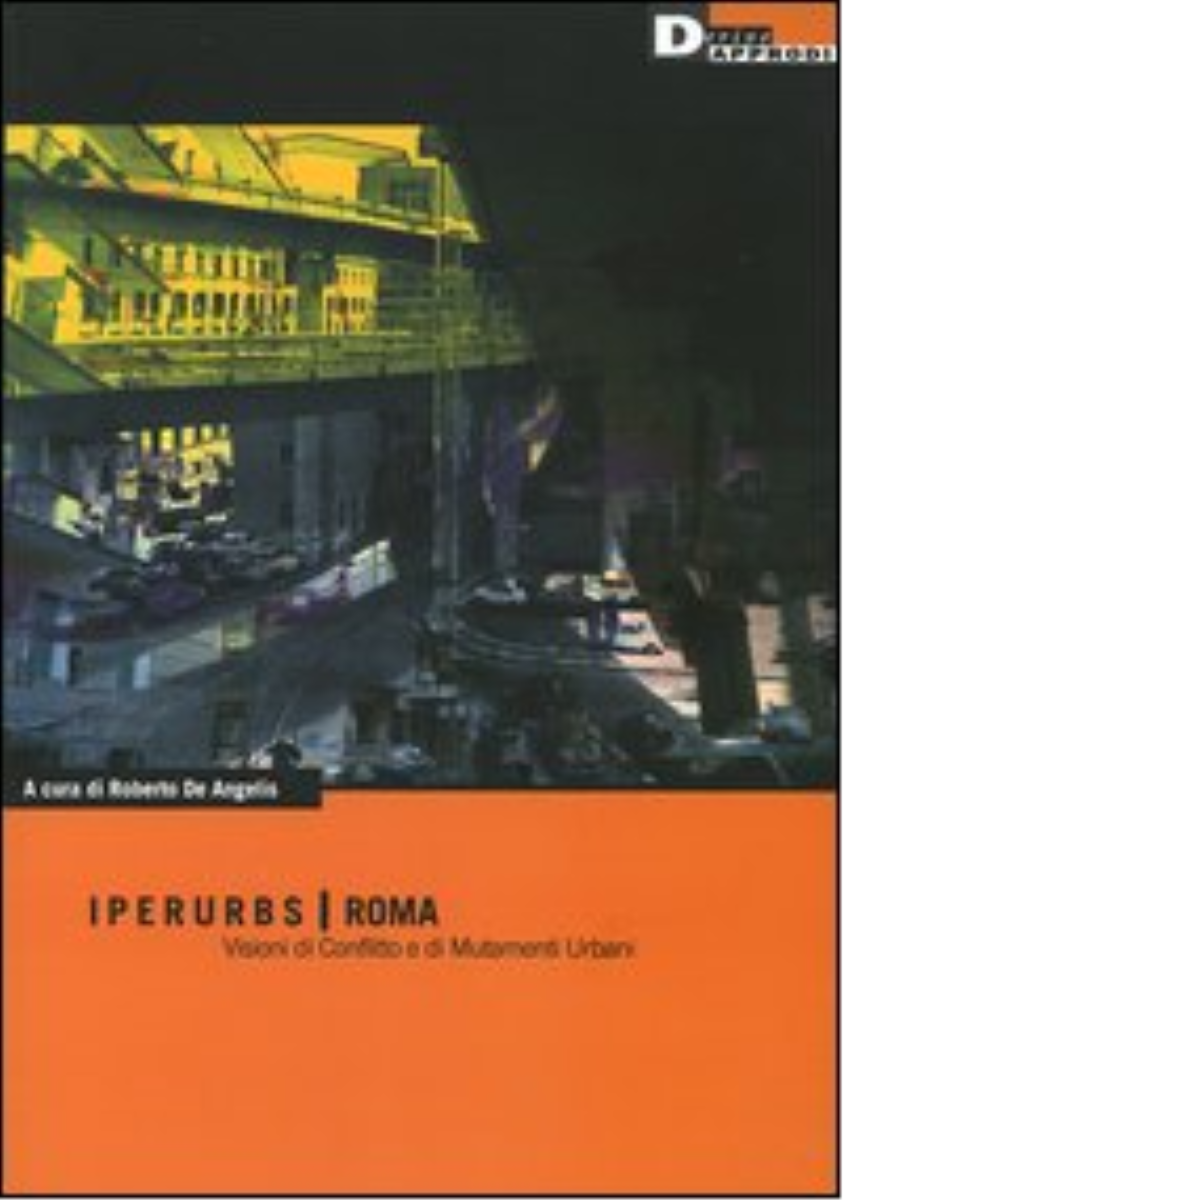 IPERURBS - ROMA di ROBERTO DE ANGELIS - DeriveApprodi editore, 2005